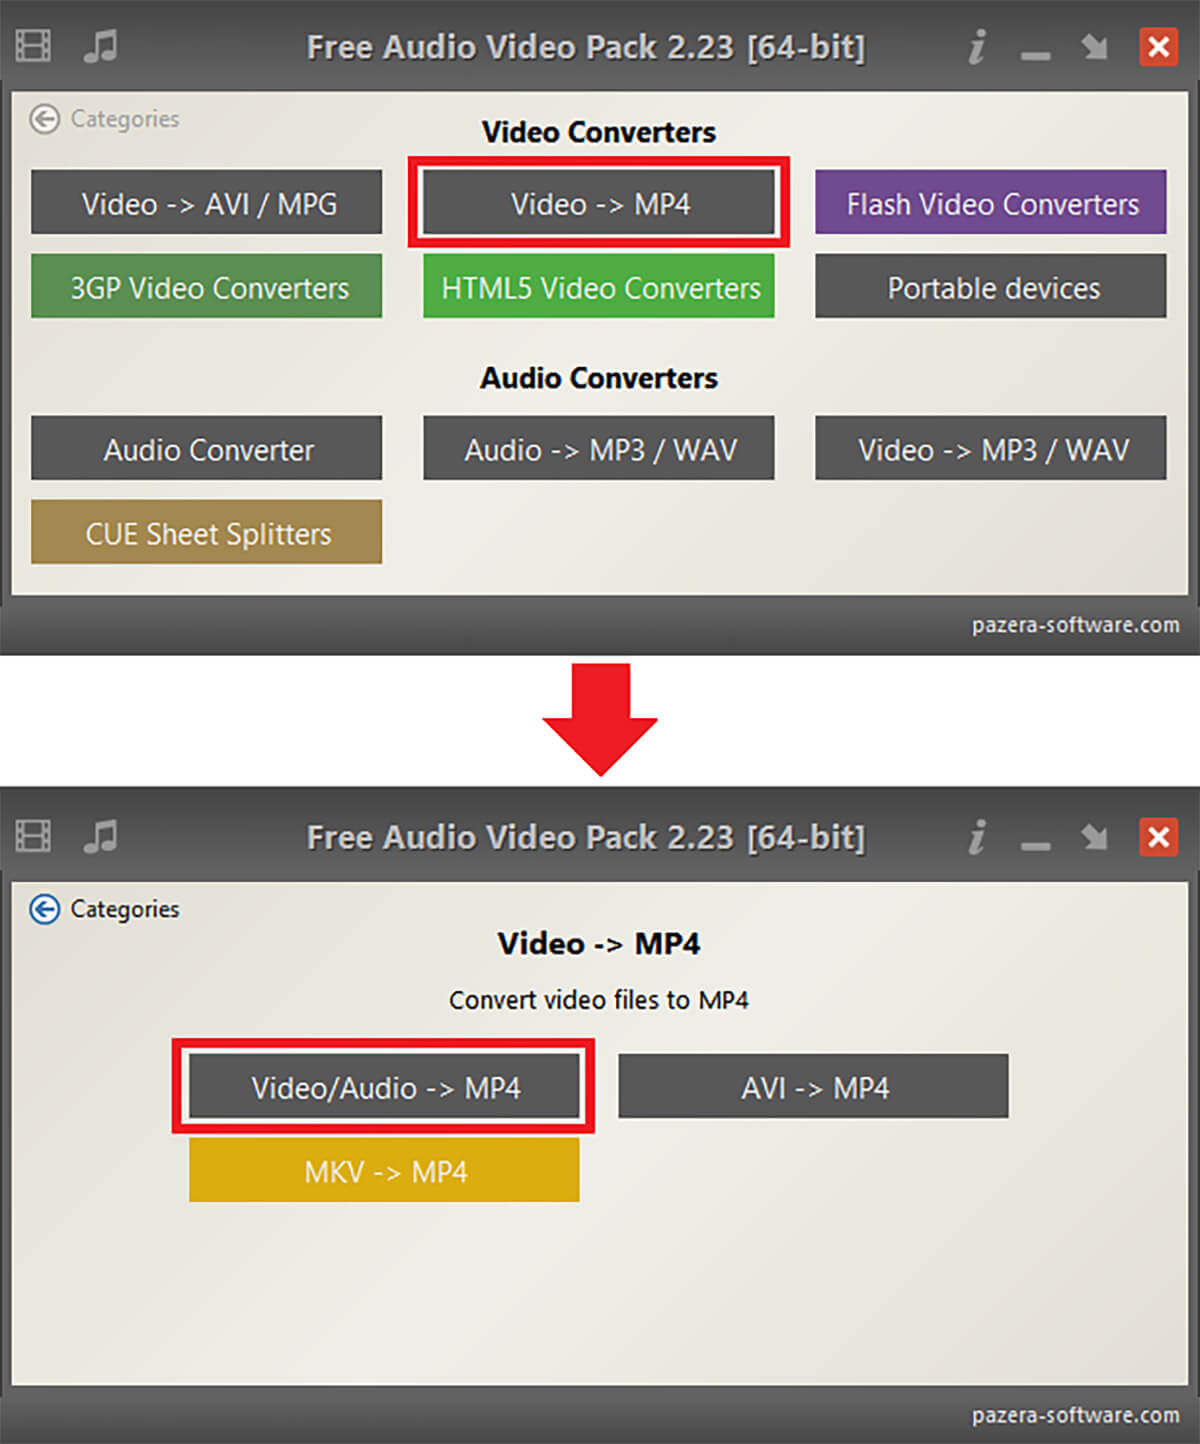 Free Audio Video Packの使い方3